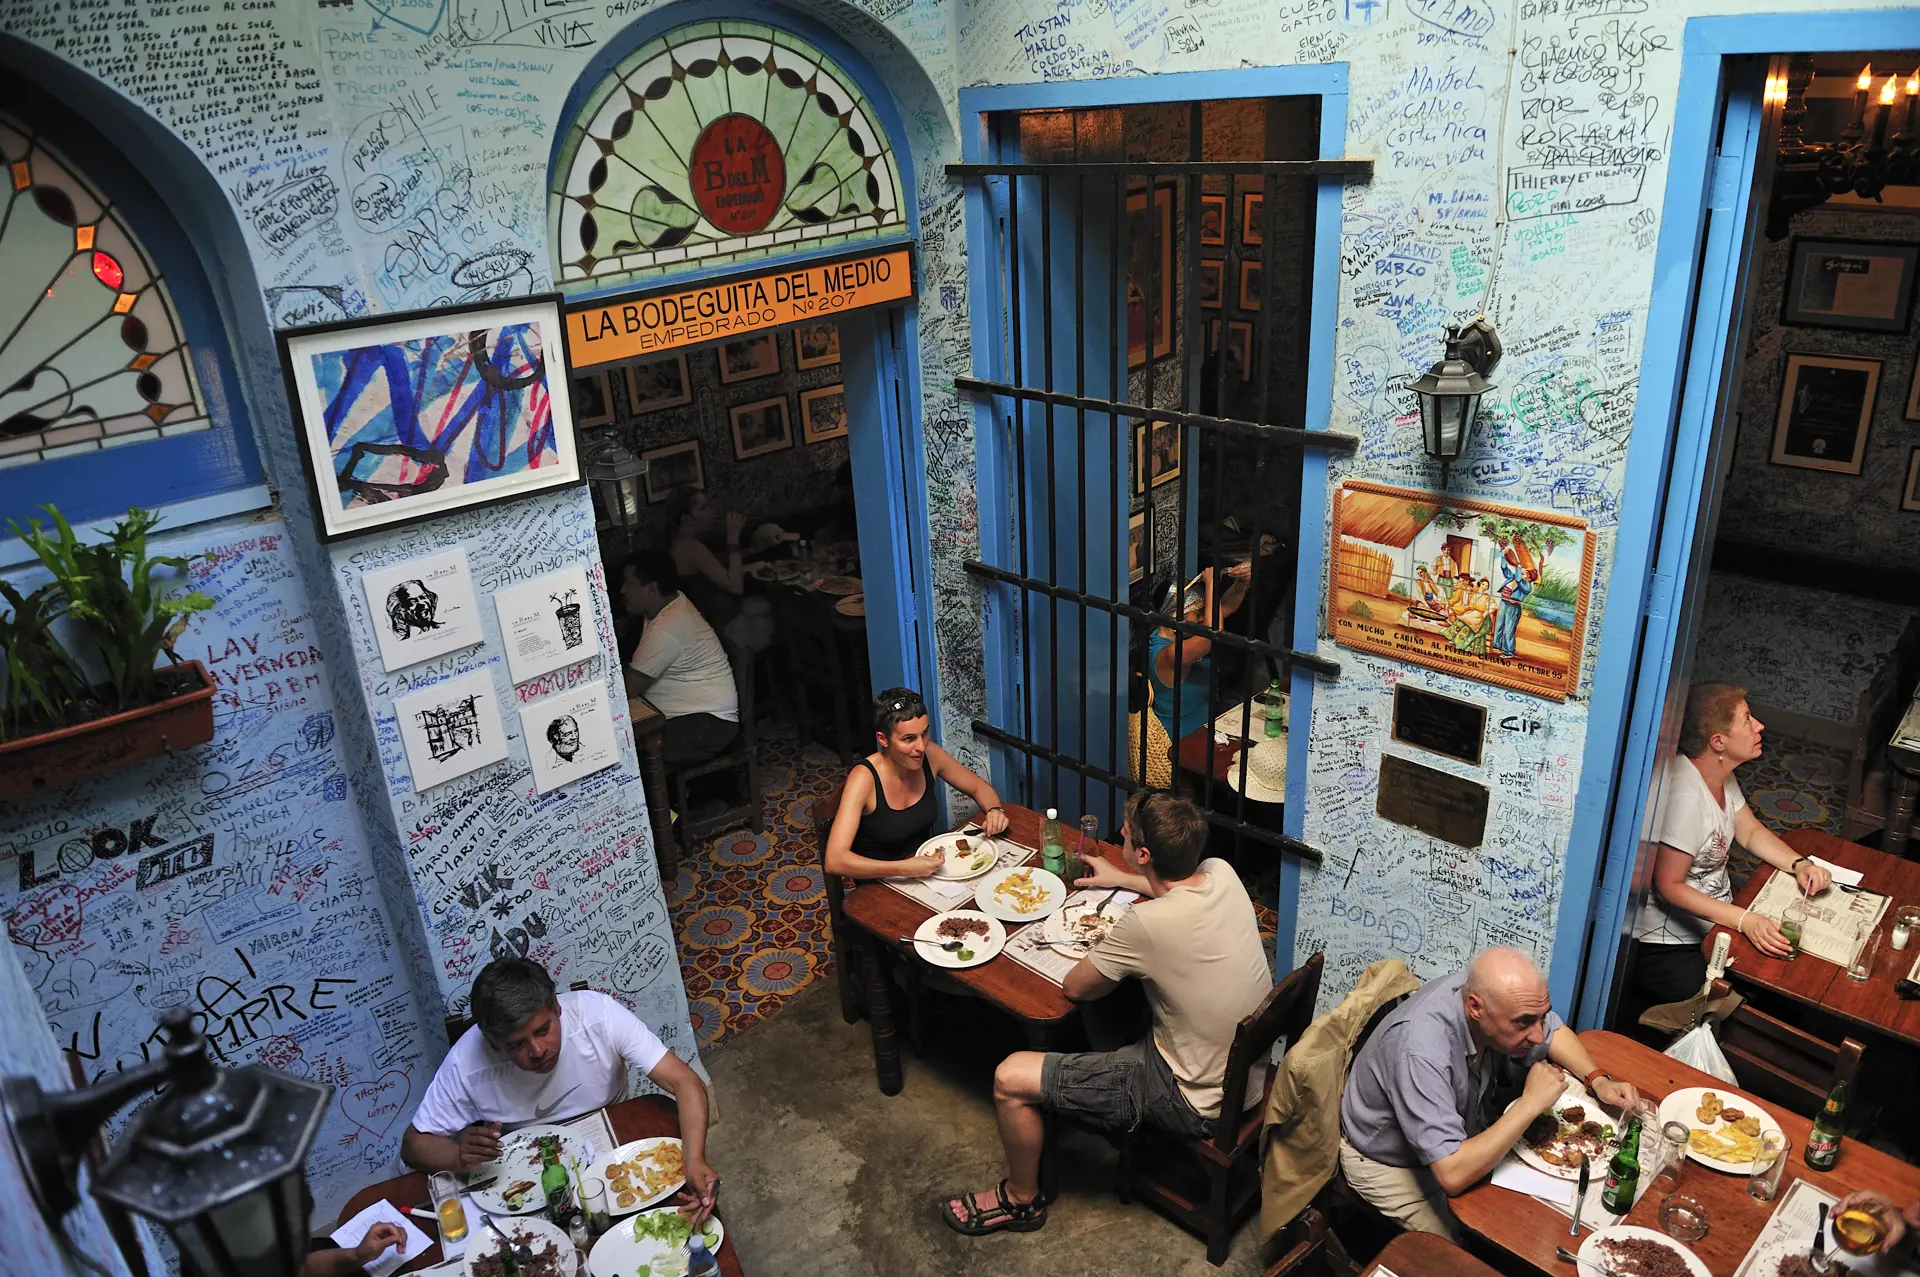 HAVANNA - private restauranter, paladars, har været med til at hæve standarden og kvaliteten på maden i Havanna og andre byer, Check Point Travel